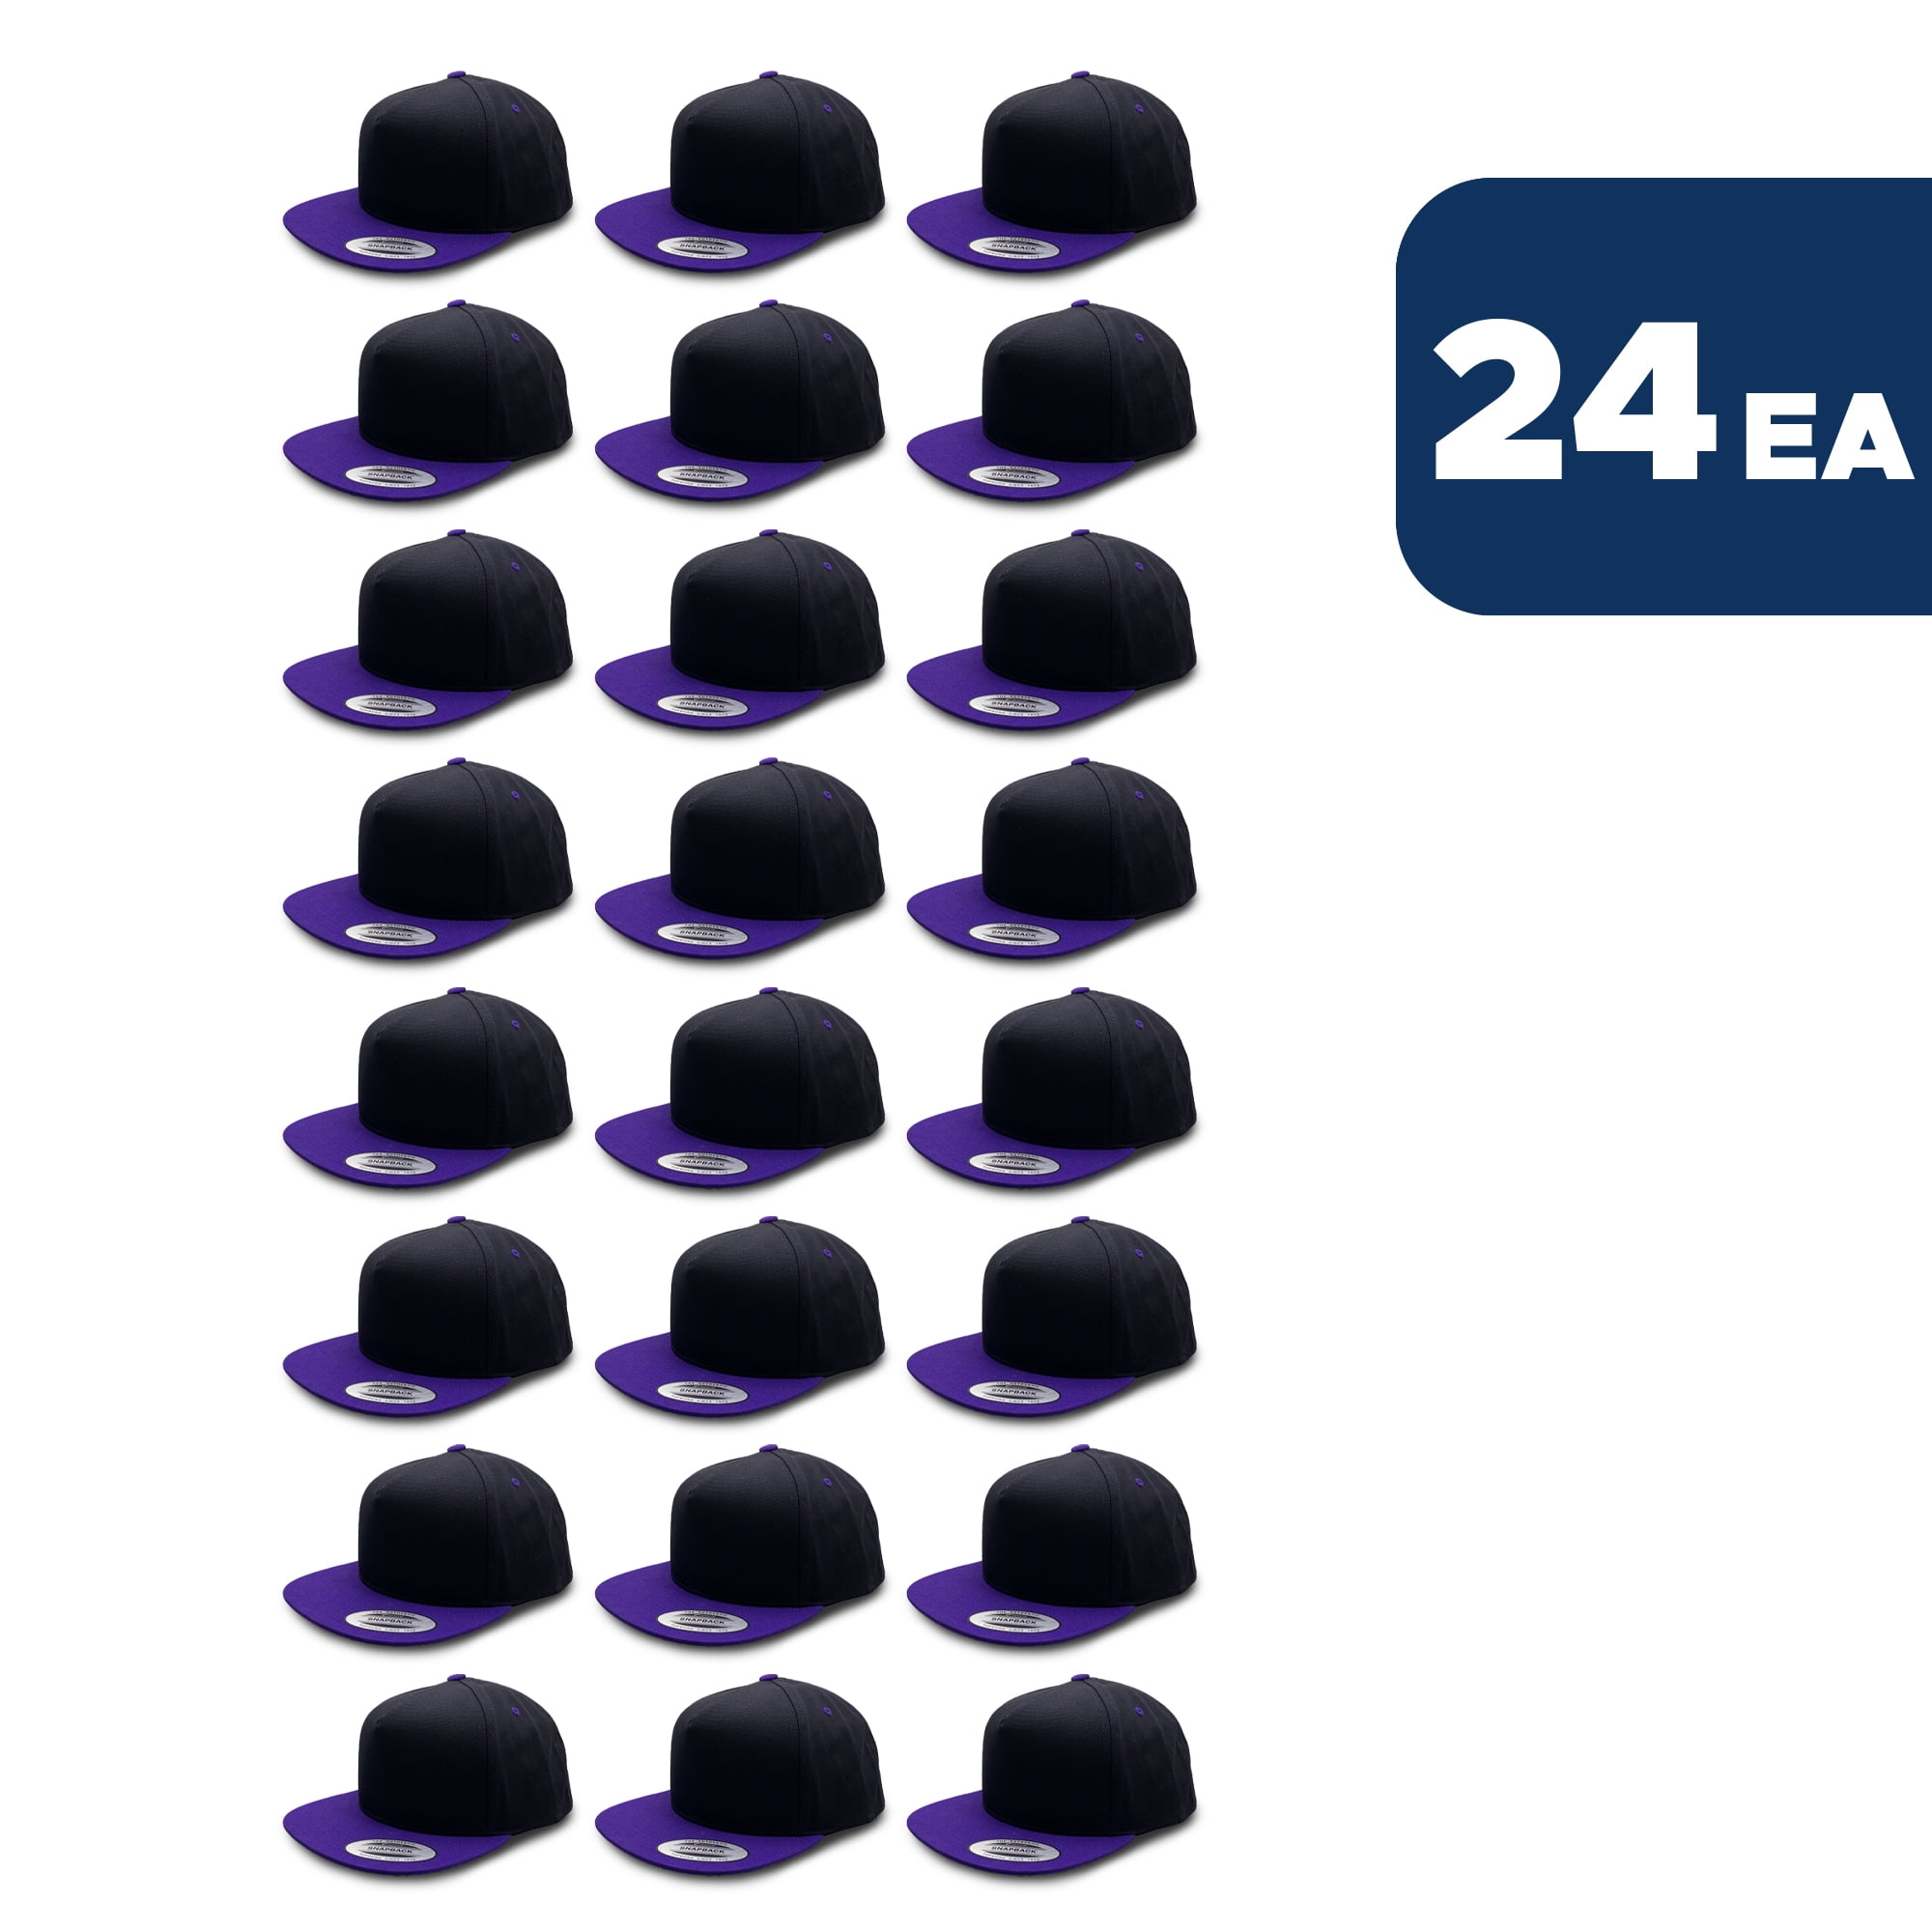 L2K Men's 5 Panel Cotton Twill Snapback 2 Tone Caps 6007 Black / Purple  24PACK